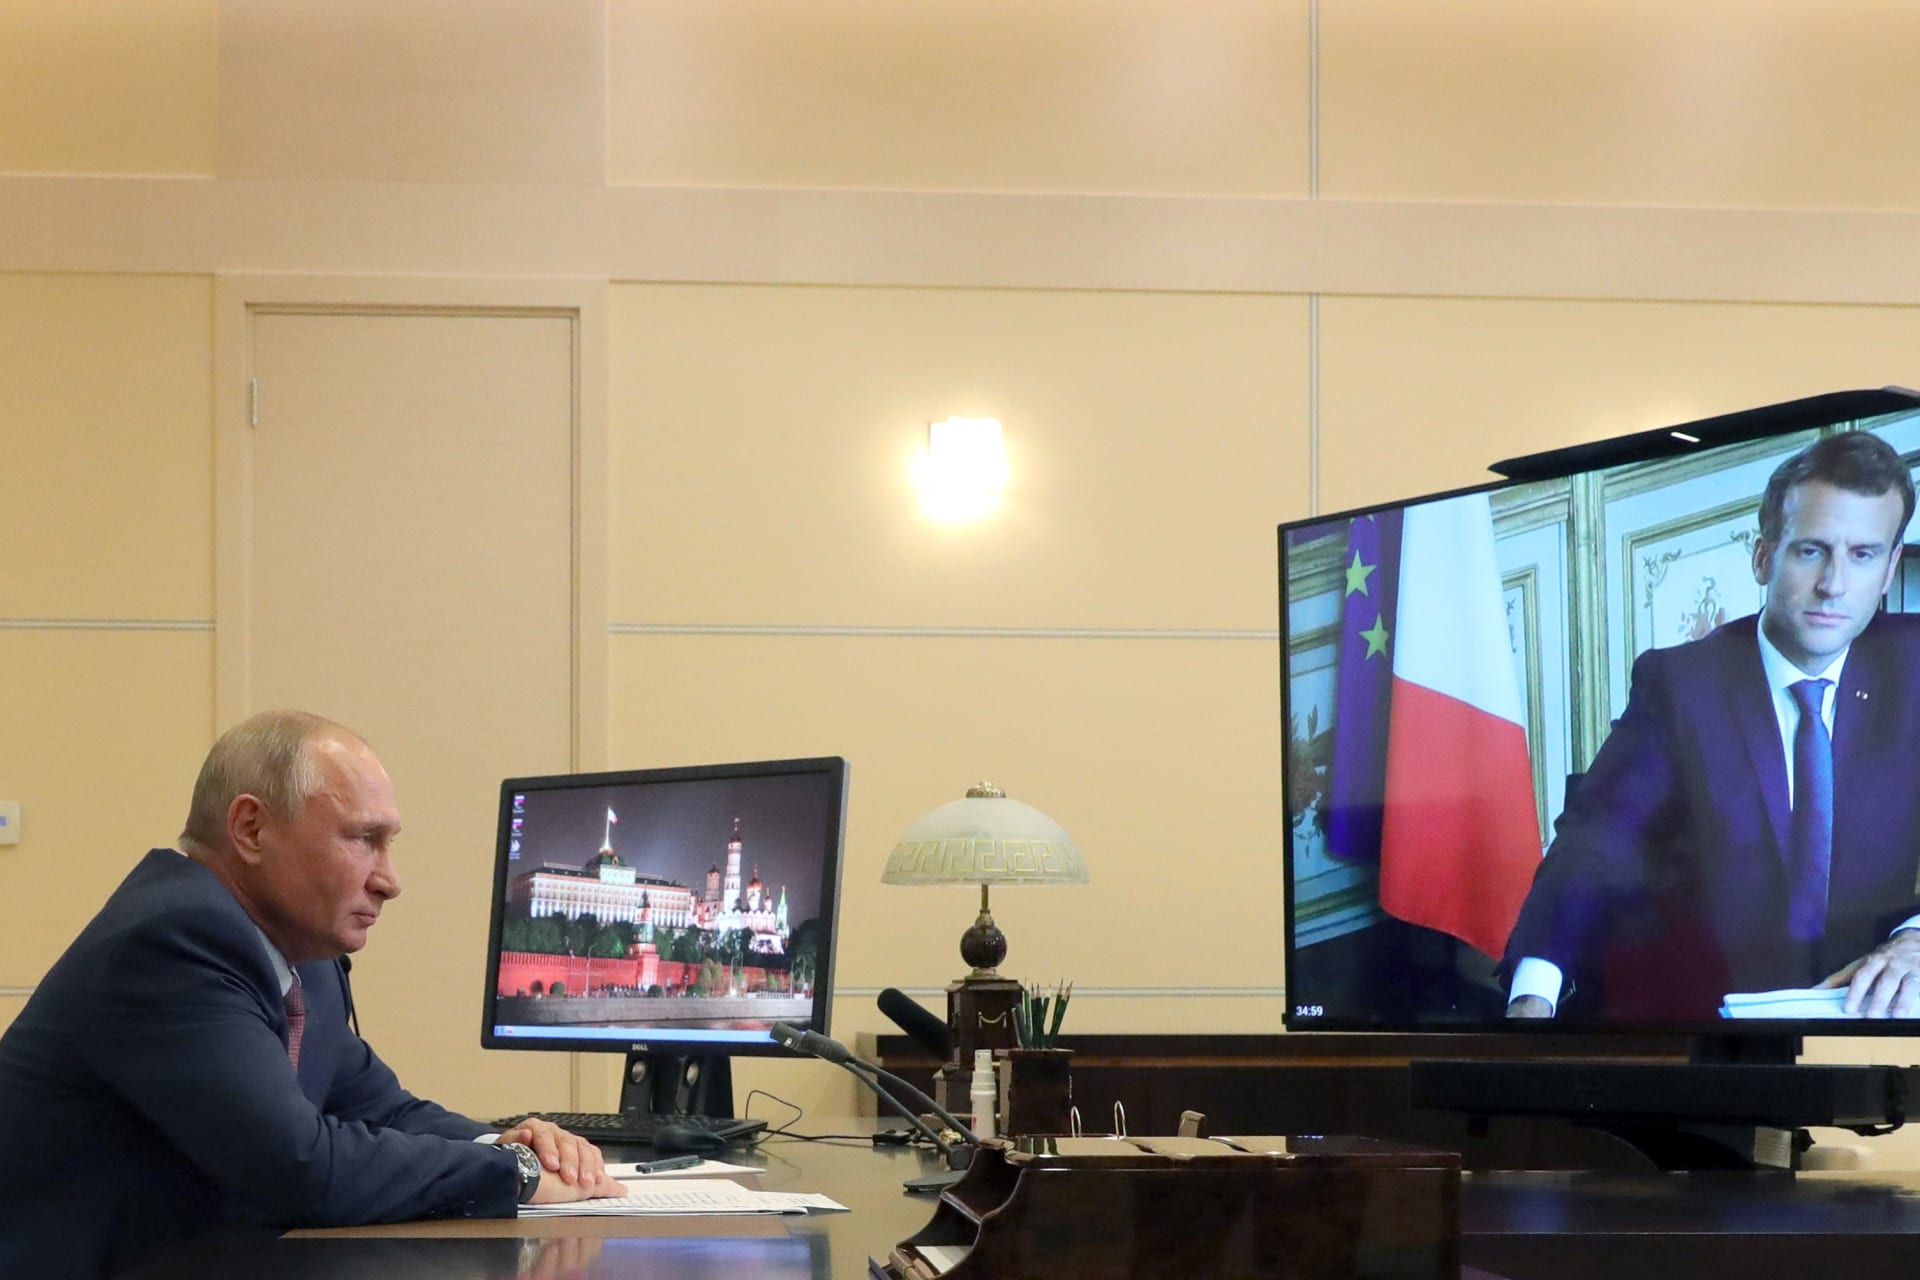 اتصال عبر تقنية الفيديو بين الرئيسين الفرنسي والروسي لبحث ملفات ليبيا وأوكرانيا وسوريا